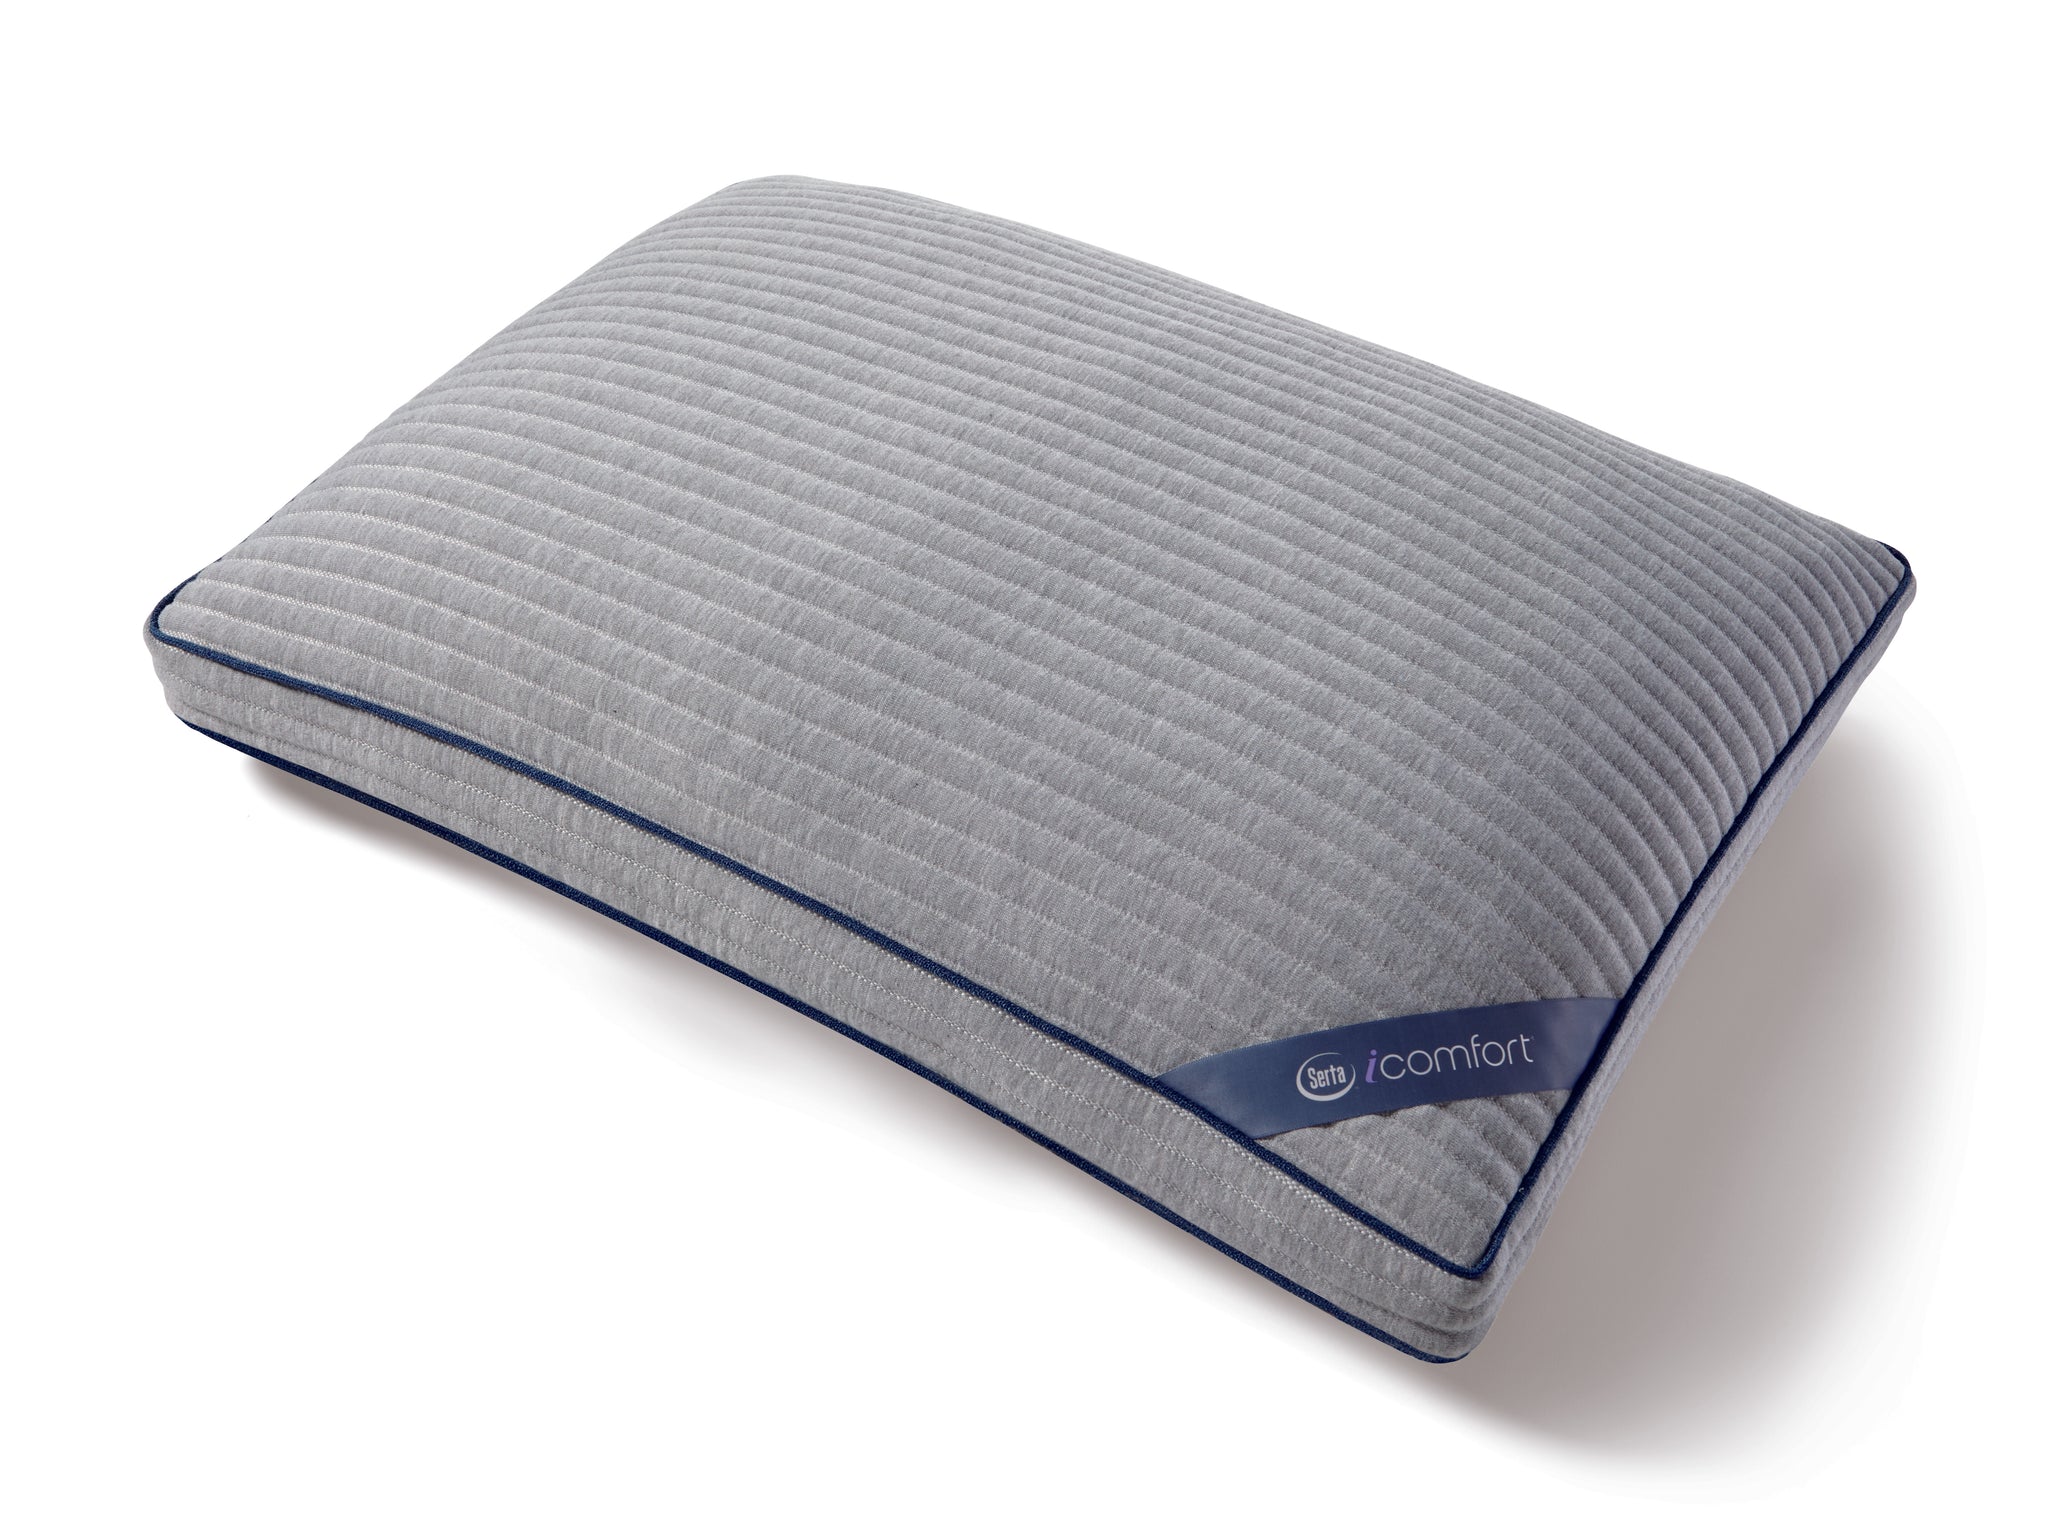 serta icomfort tencel mattress and pillow protector set